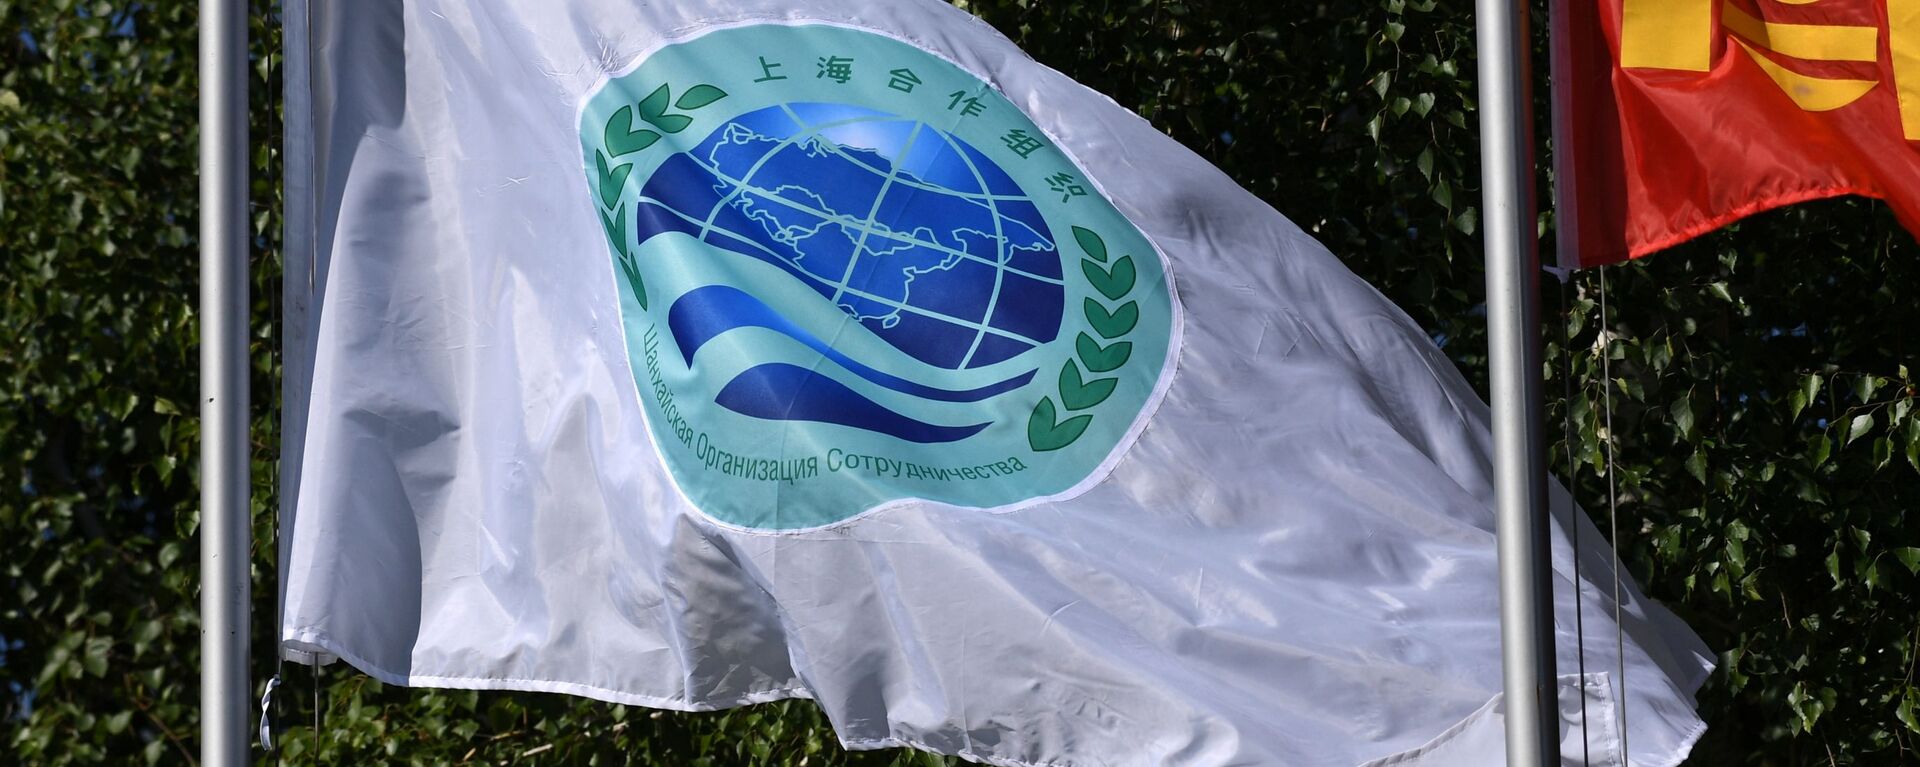 Флаг с эмблемой саммита ШОС перед началом заседания Совета глав государств - членов Шанхайской организации сотрудничества в государственной резиденции Ала-Арча в Бишкеке - Sputnik Казахстан, 1920, 06.06.2022